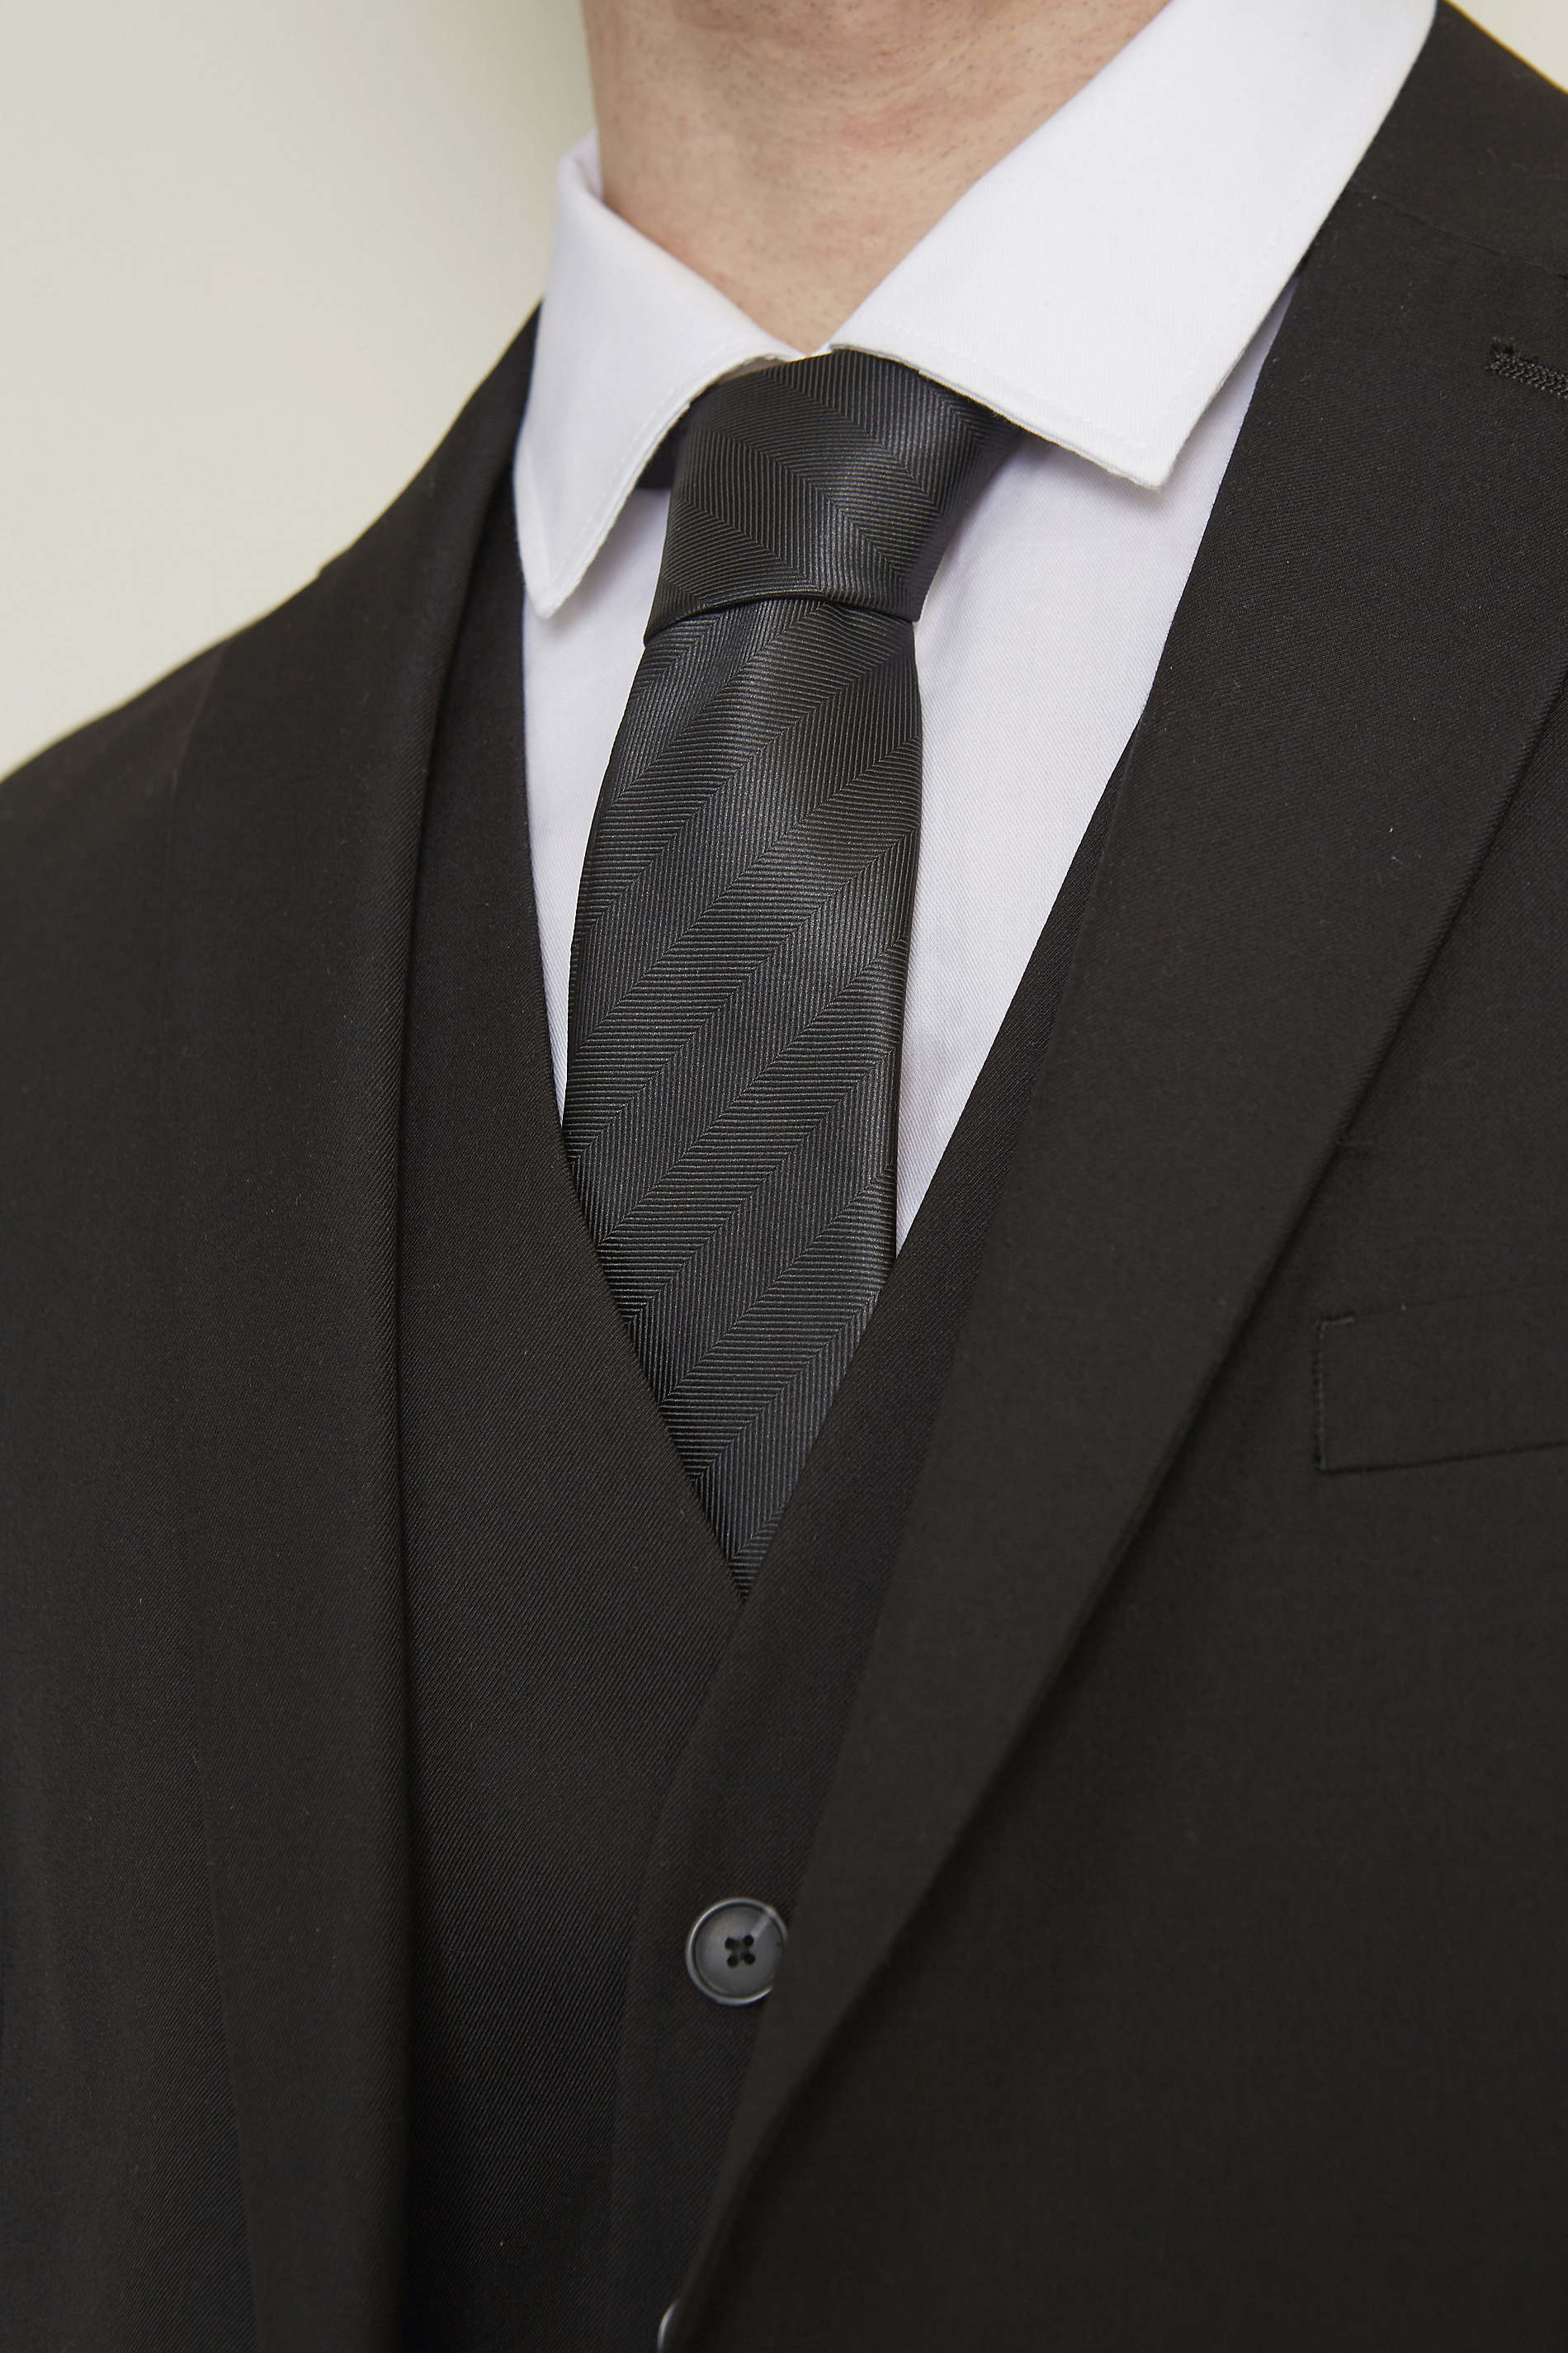 CORBATA DE RAYAS FALSO LISO<br/><p>La corbata club es un accesorio esencial del guardarropa masculino. Su falso<br>color liso aporta sobriedad y elegancia a los conjuntos formales.</p> NEOBLU TOMMY